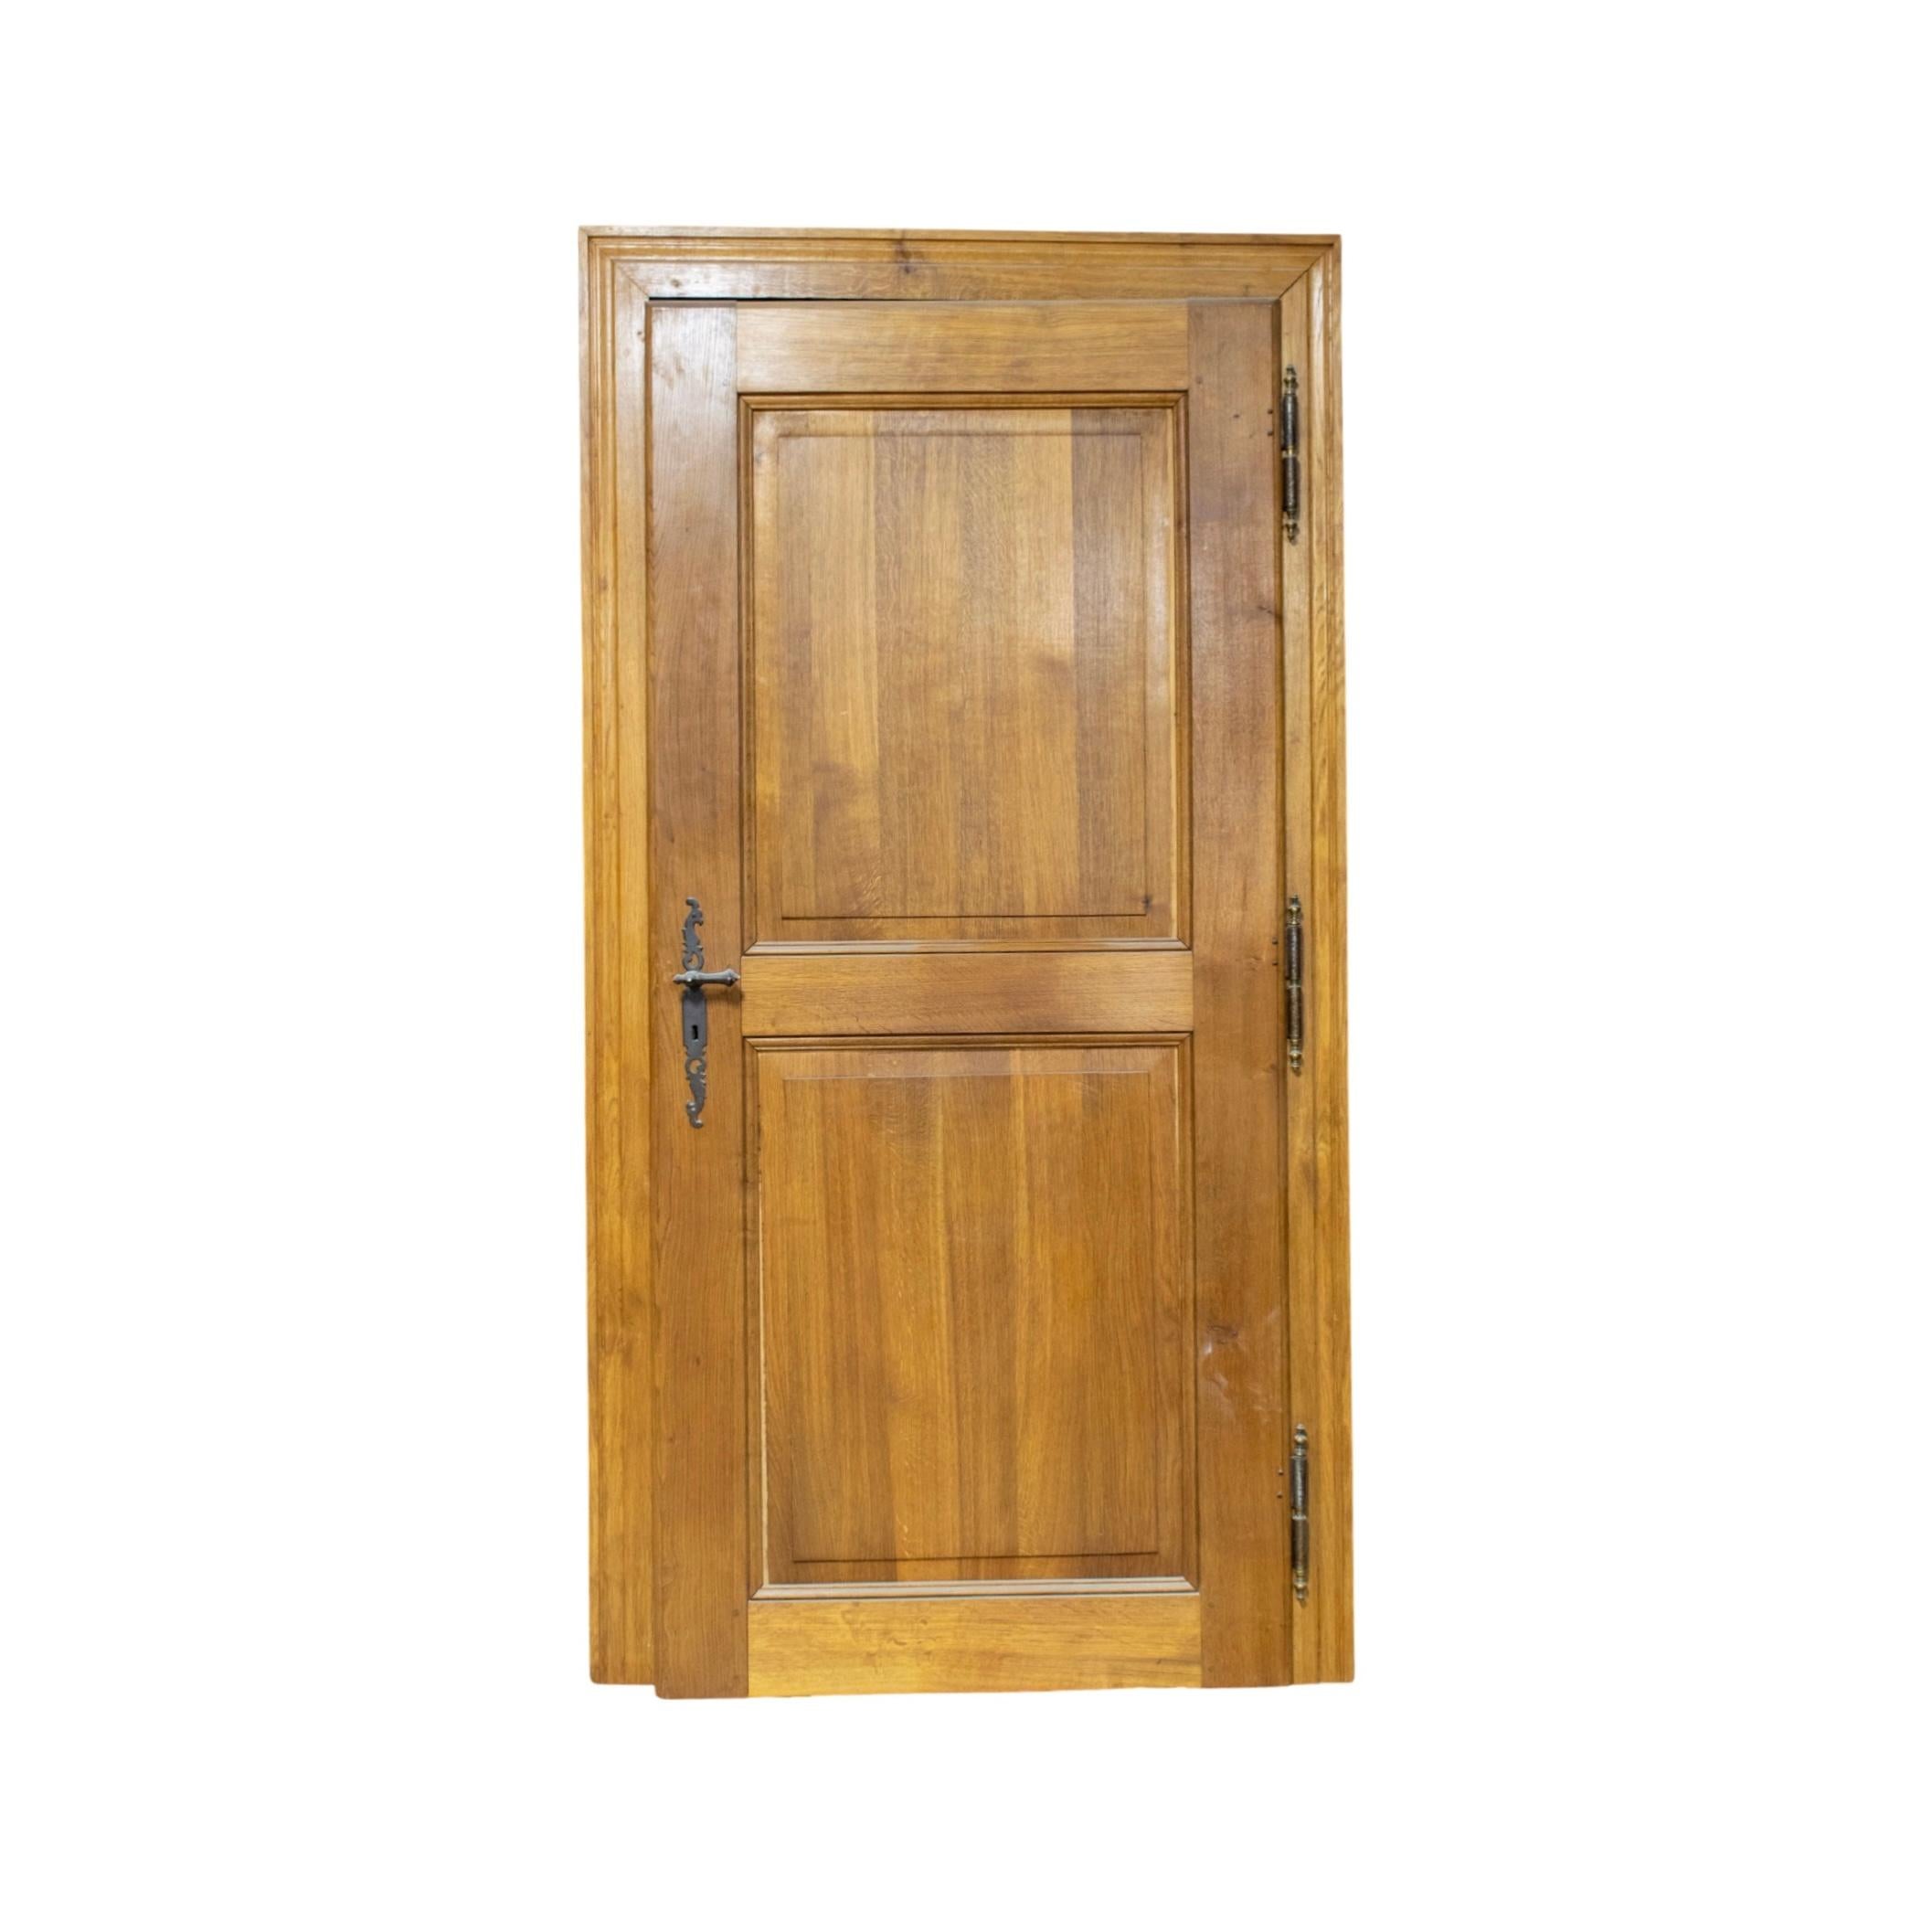 Cette porte à cadre en chêne simple français du XIXe siècle offre un aspect intemporel qui apportera du caractère et du style à n'importe quelle pièce. La porte simple et le cadre sont construits en bois de chêne massif, ce qui leur confère solidité